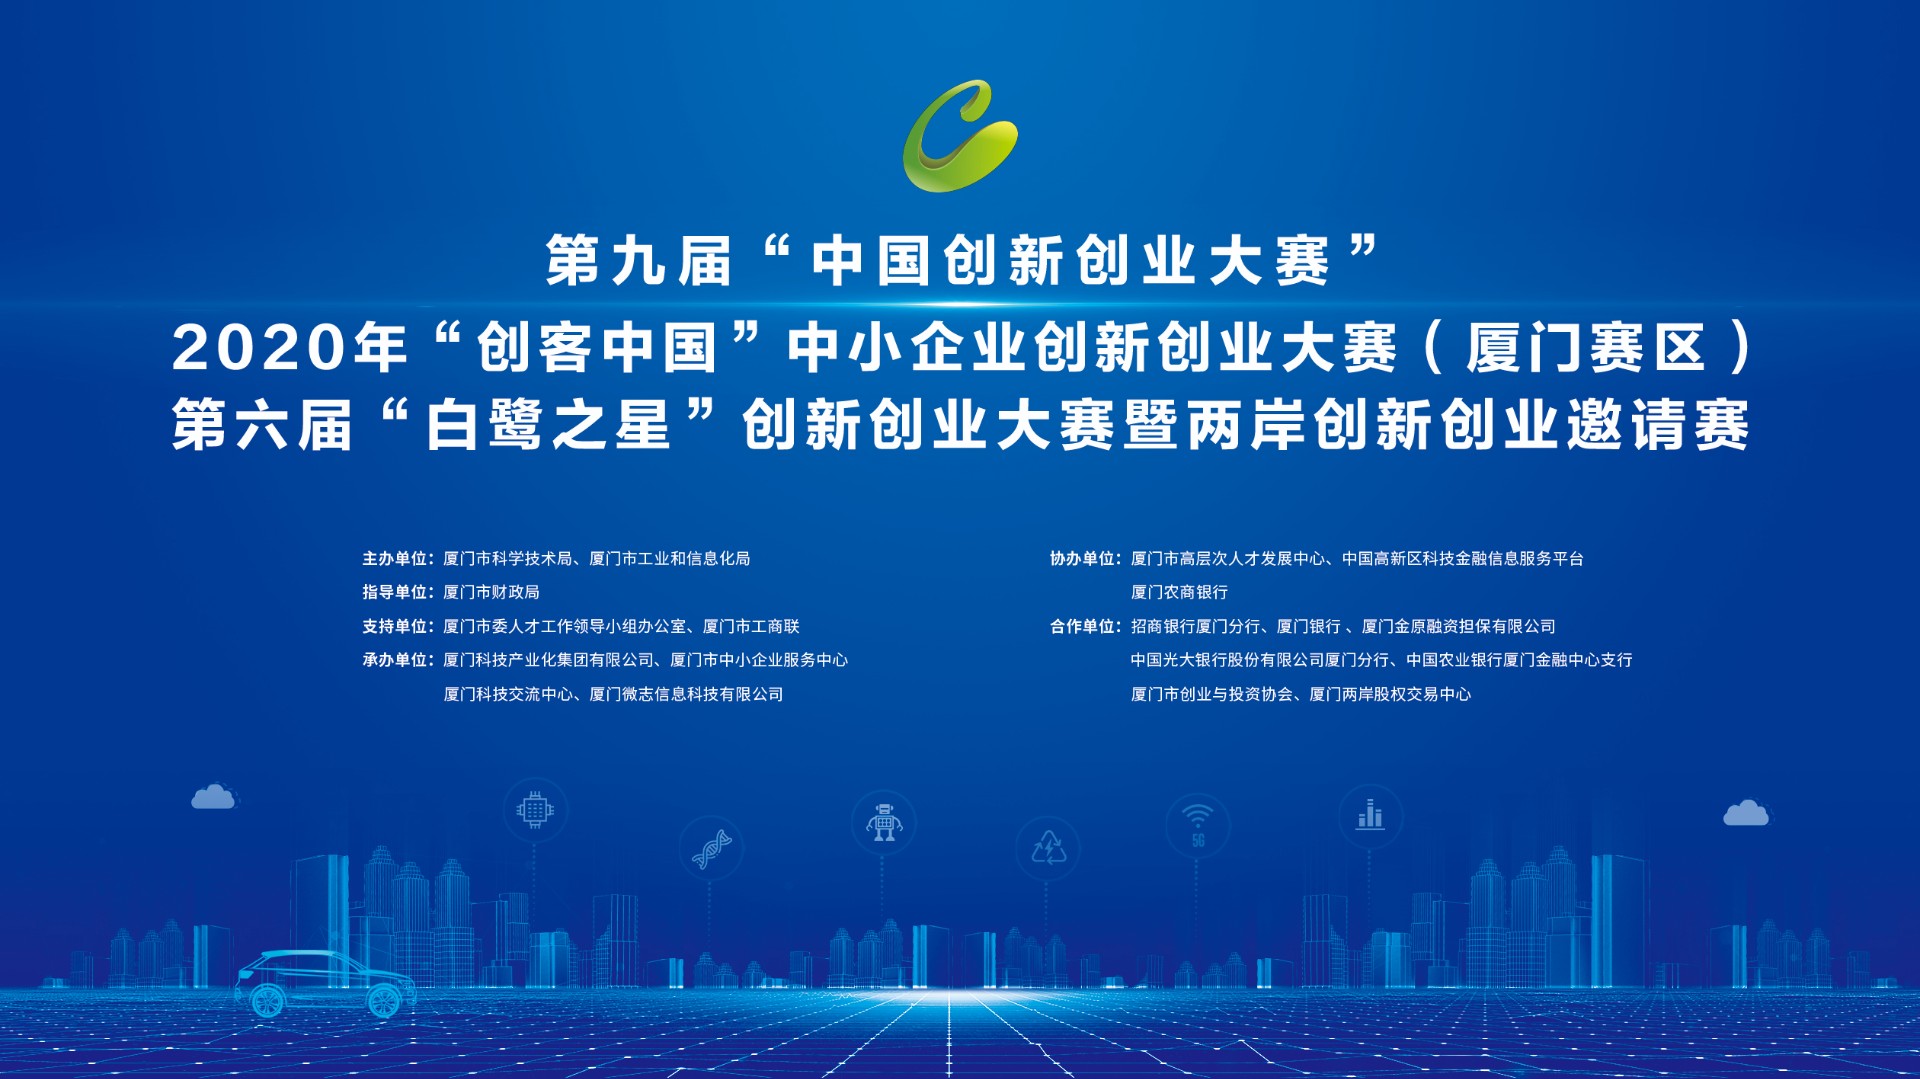 第九届“中国创新创业大赛”、2020“创客中国”中小企业创新创业大赛（厦门地区）暨第六届“白鹭之星”创新创业大赛成功举办